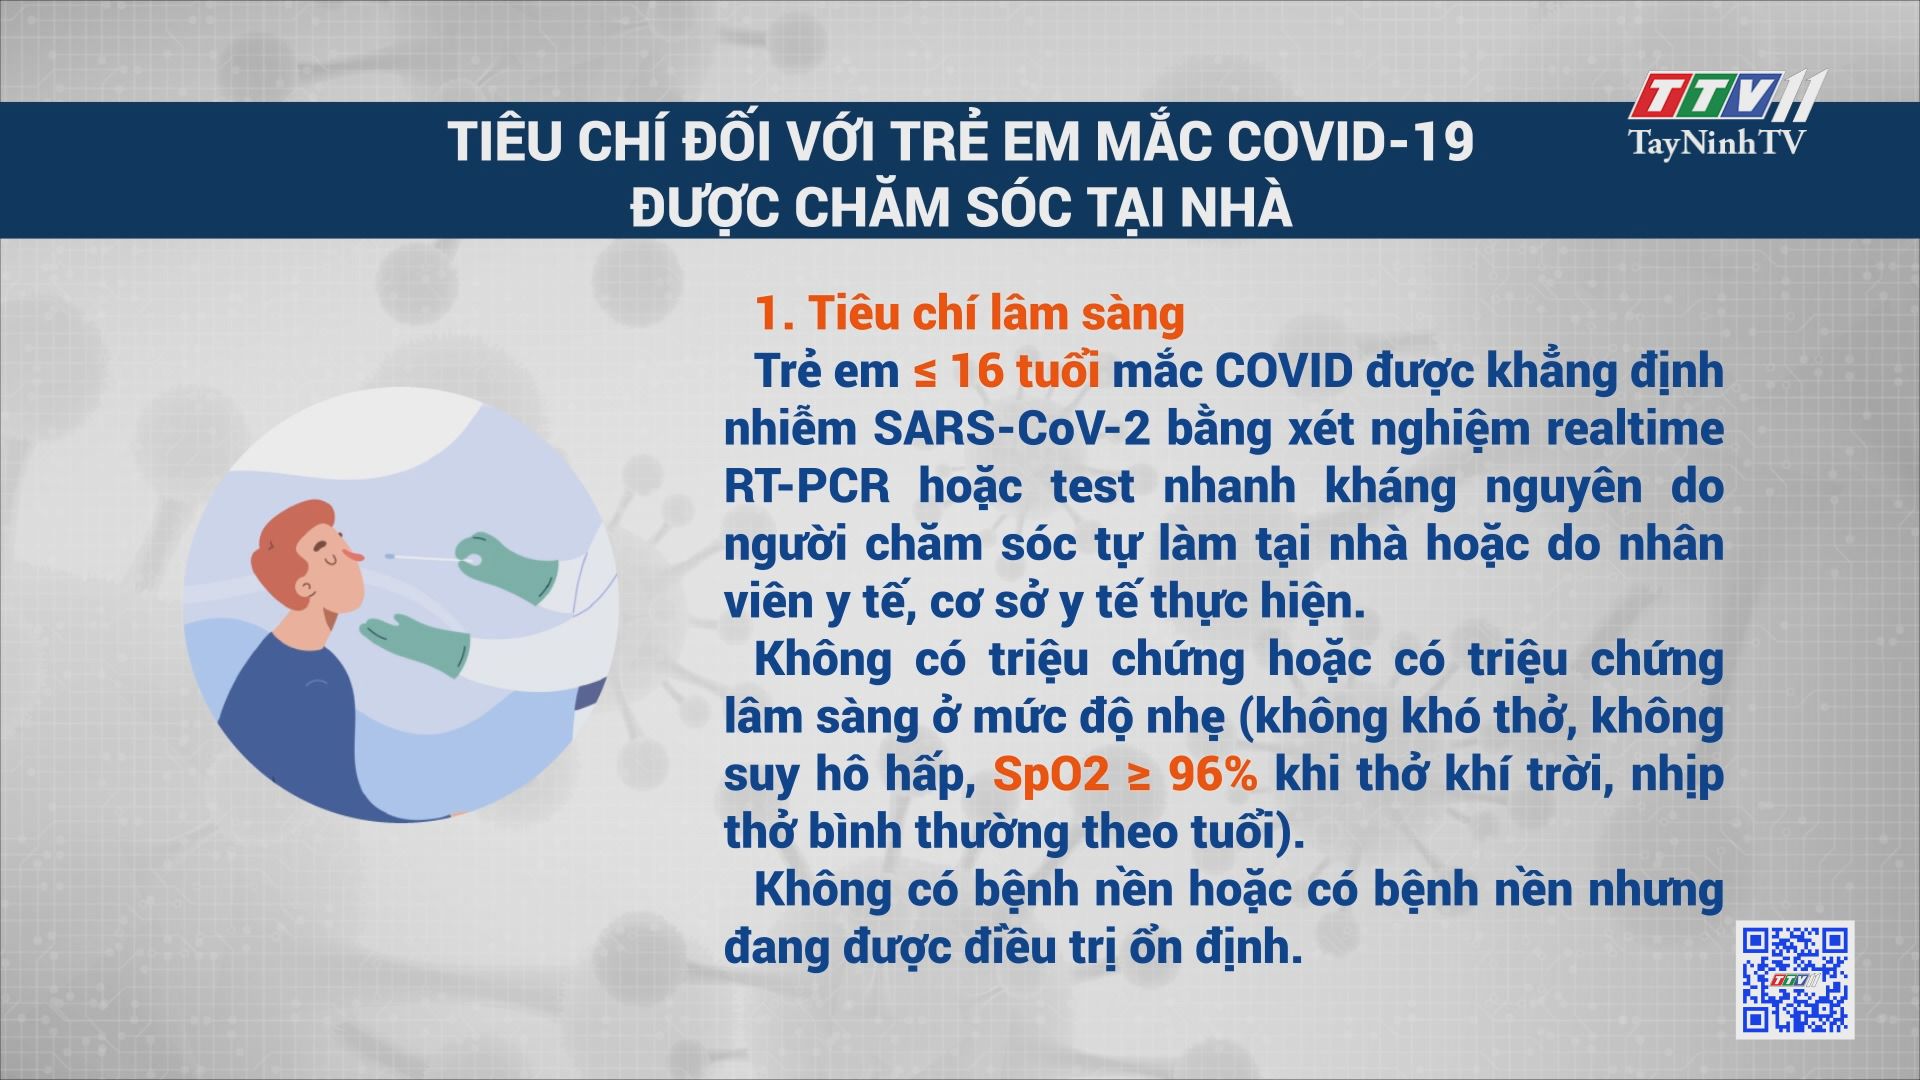 Hướng dẫn chăm sóc trẻ mắc Covid-19 tại nhà | PHÒNG CHỐNG DỊCH COVID-19 | TayNinhTV